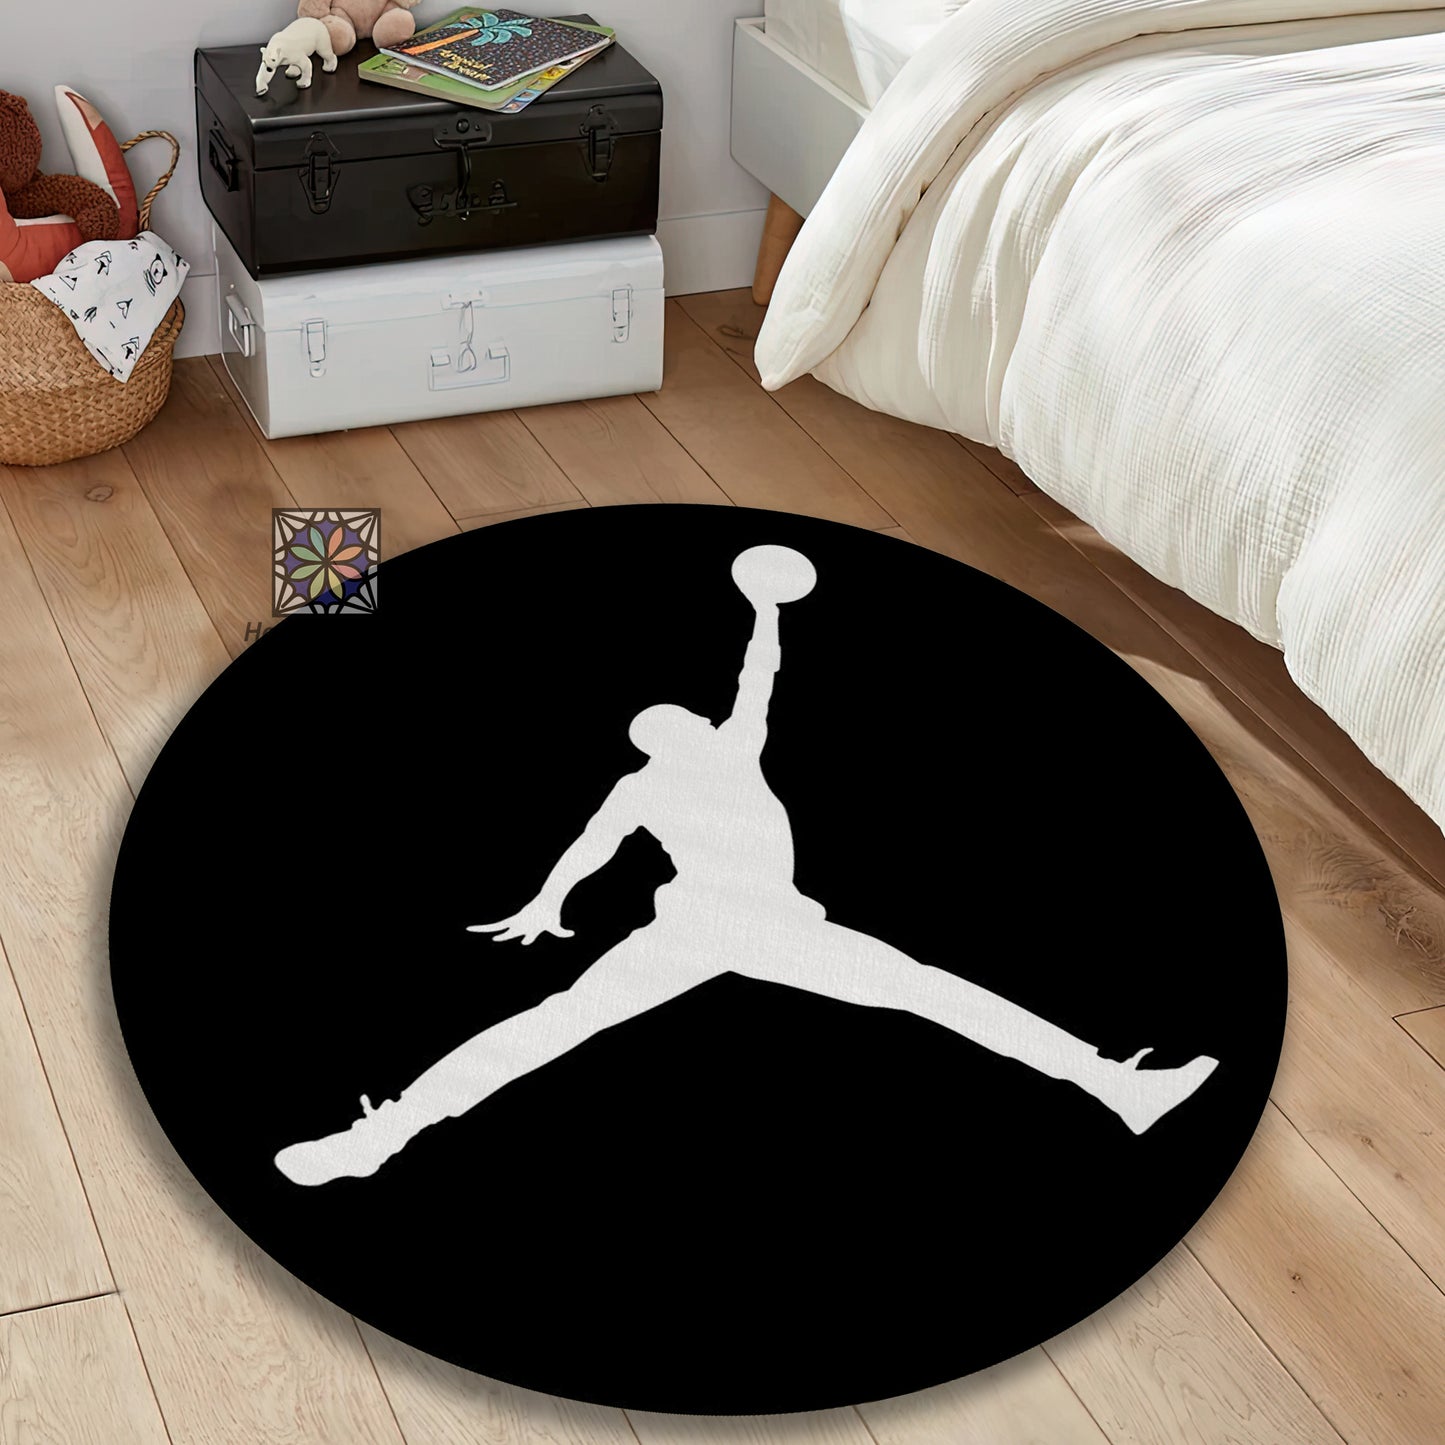 Jump Man Symbol Rug, Air Jordan Round Mat, Sneaker Black Carpet, Sneaker Room Decor, Jordan Gift